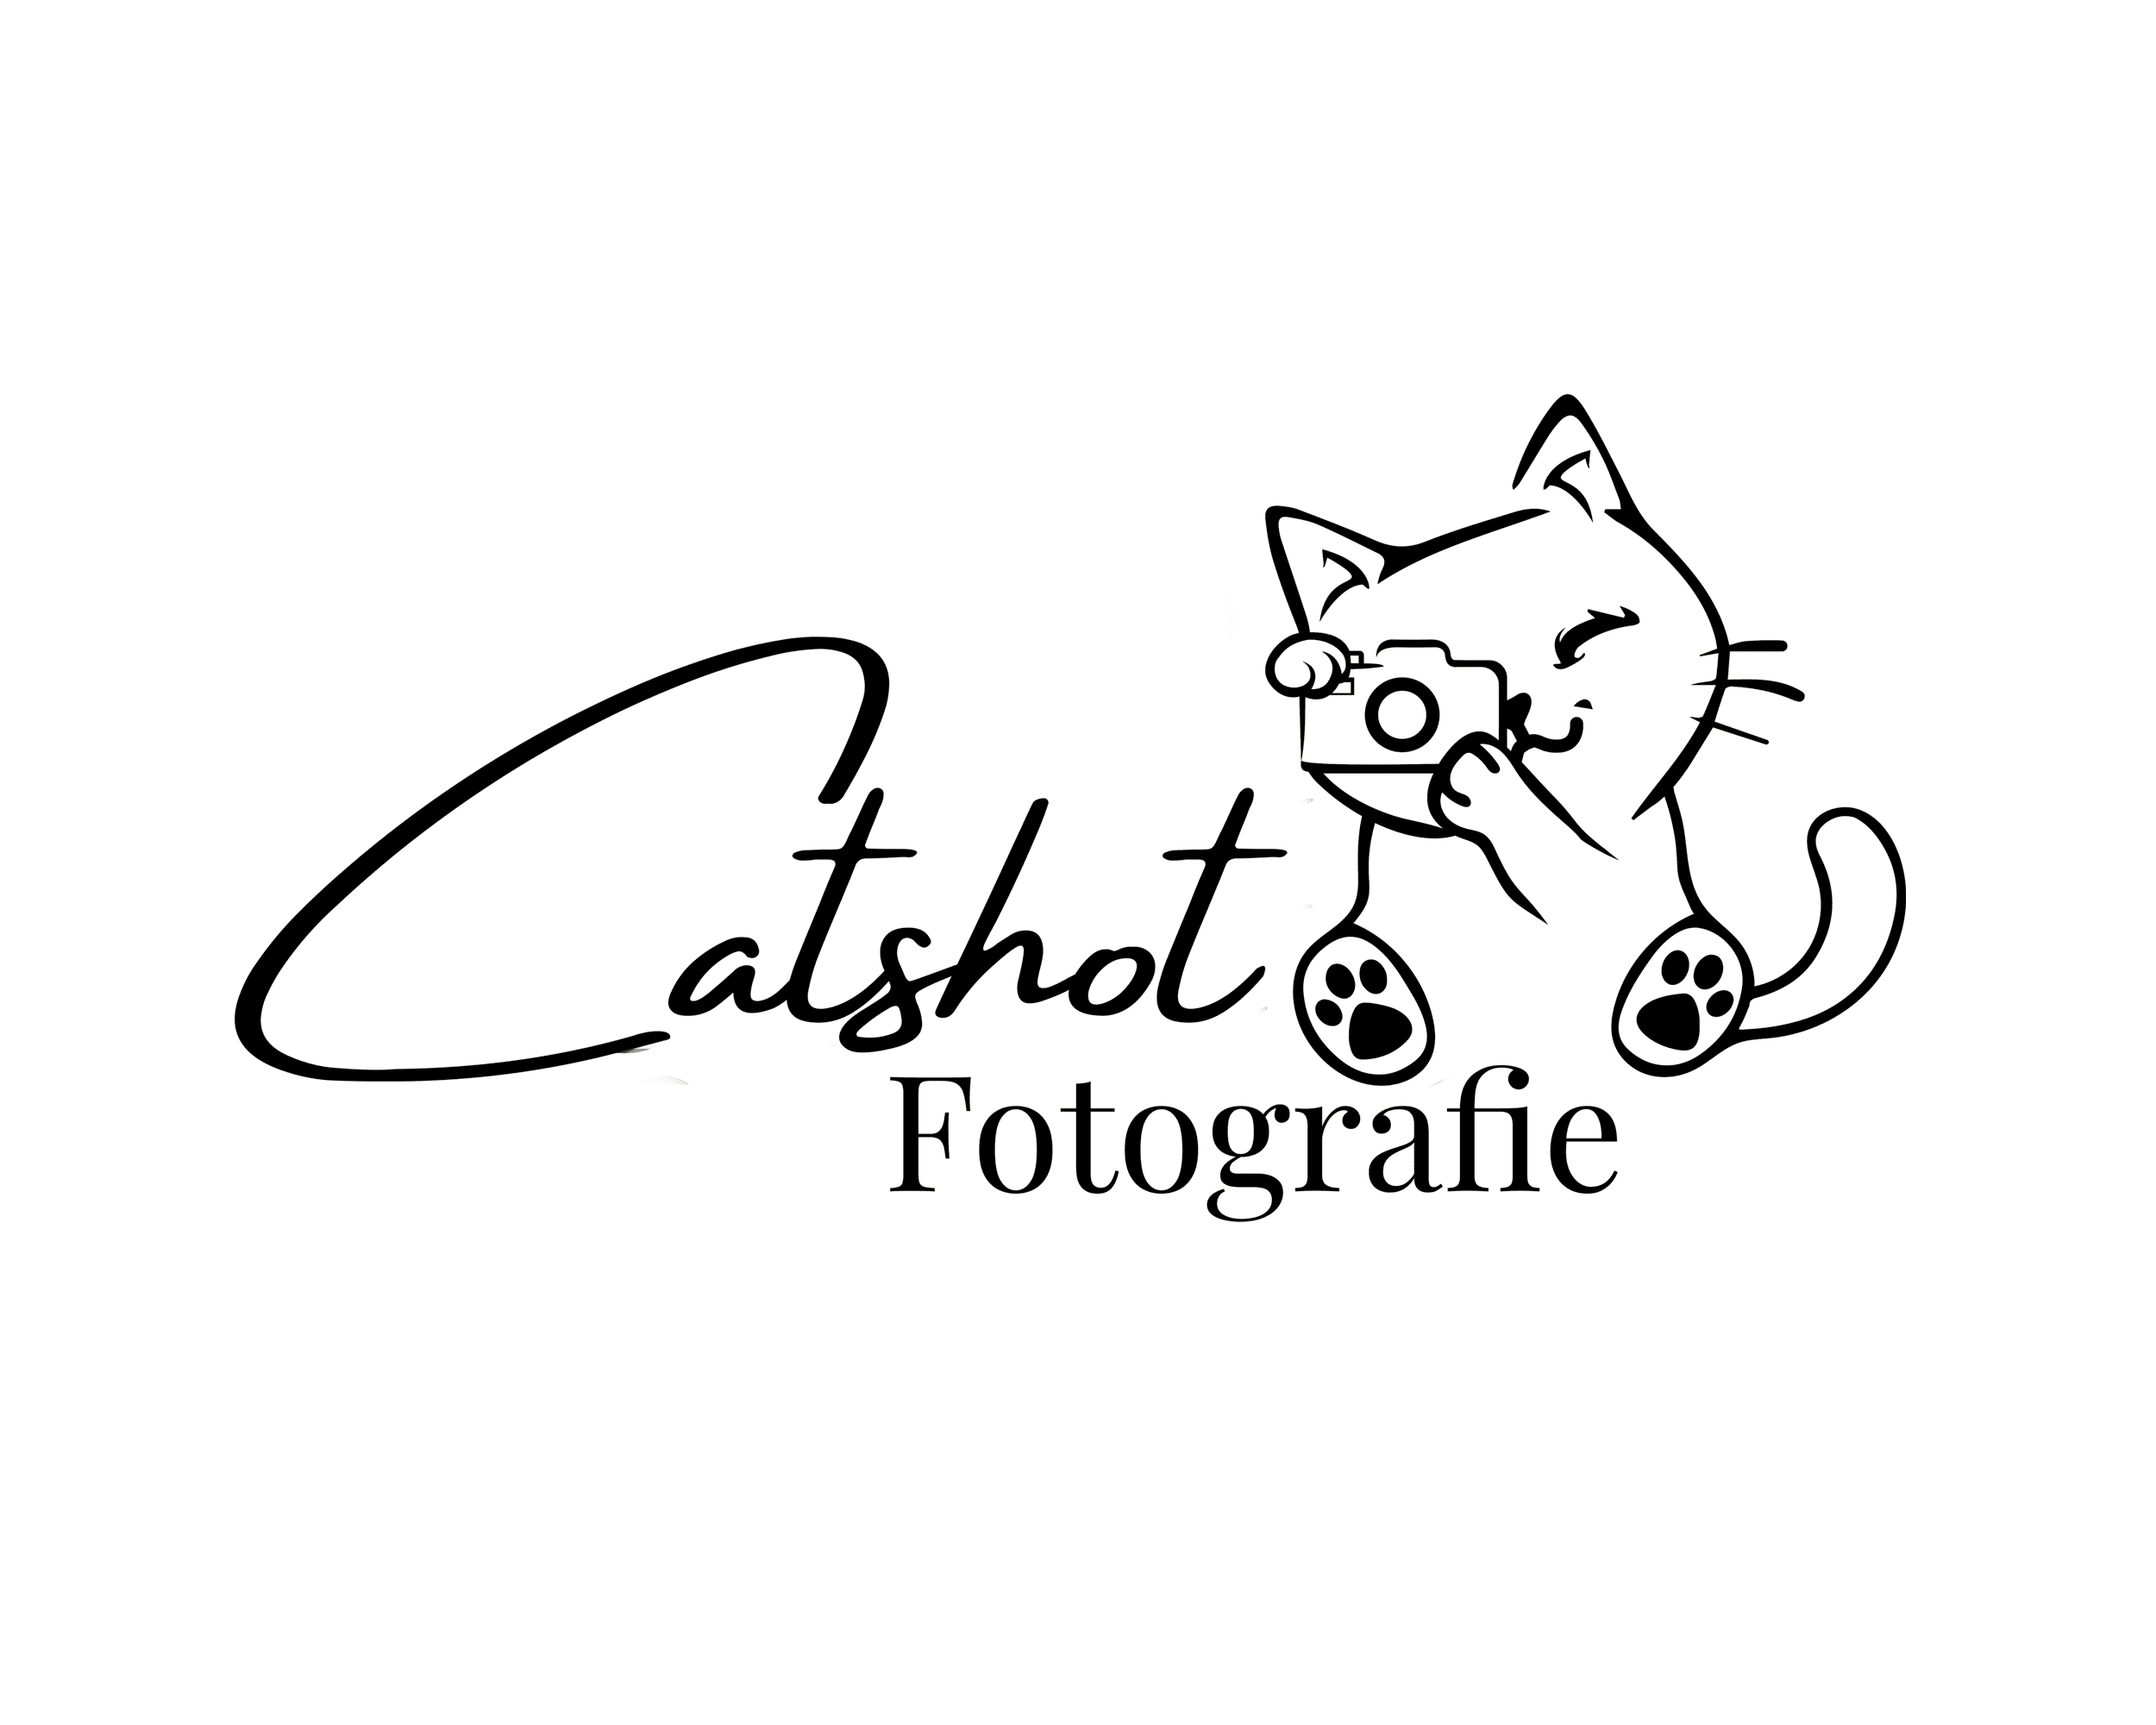 Catshot Fotografie | Tier- & Portraitfotografie